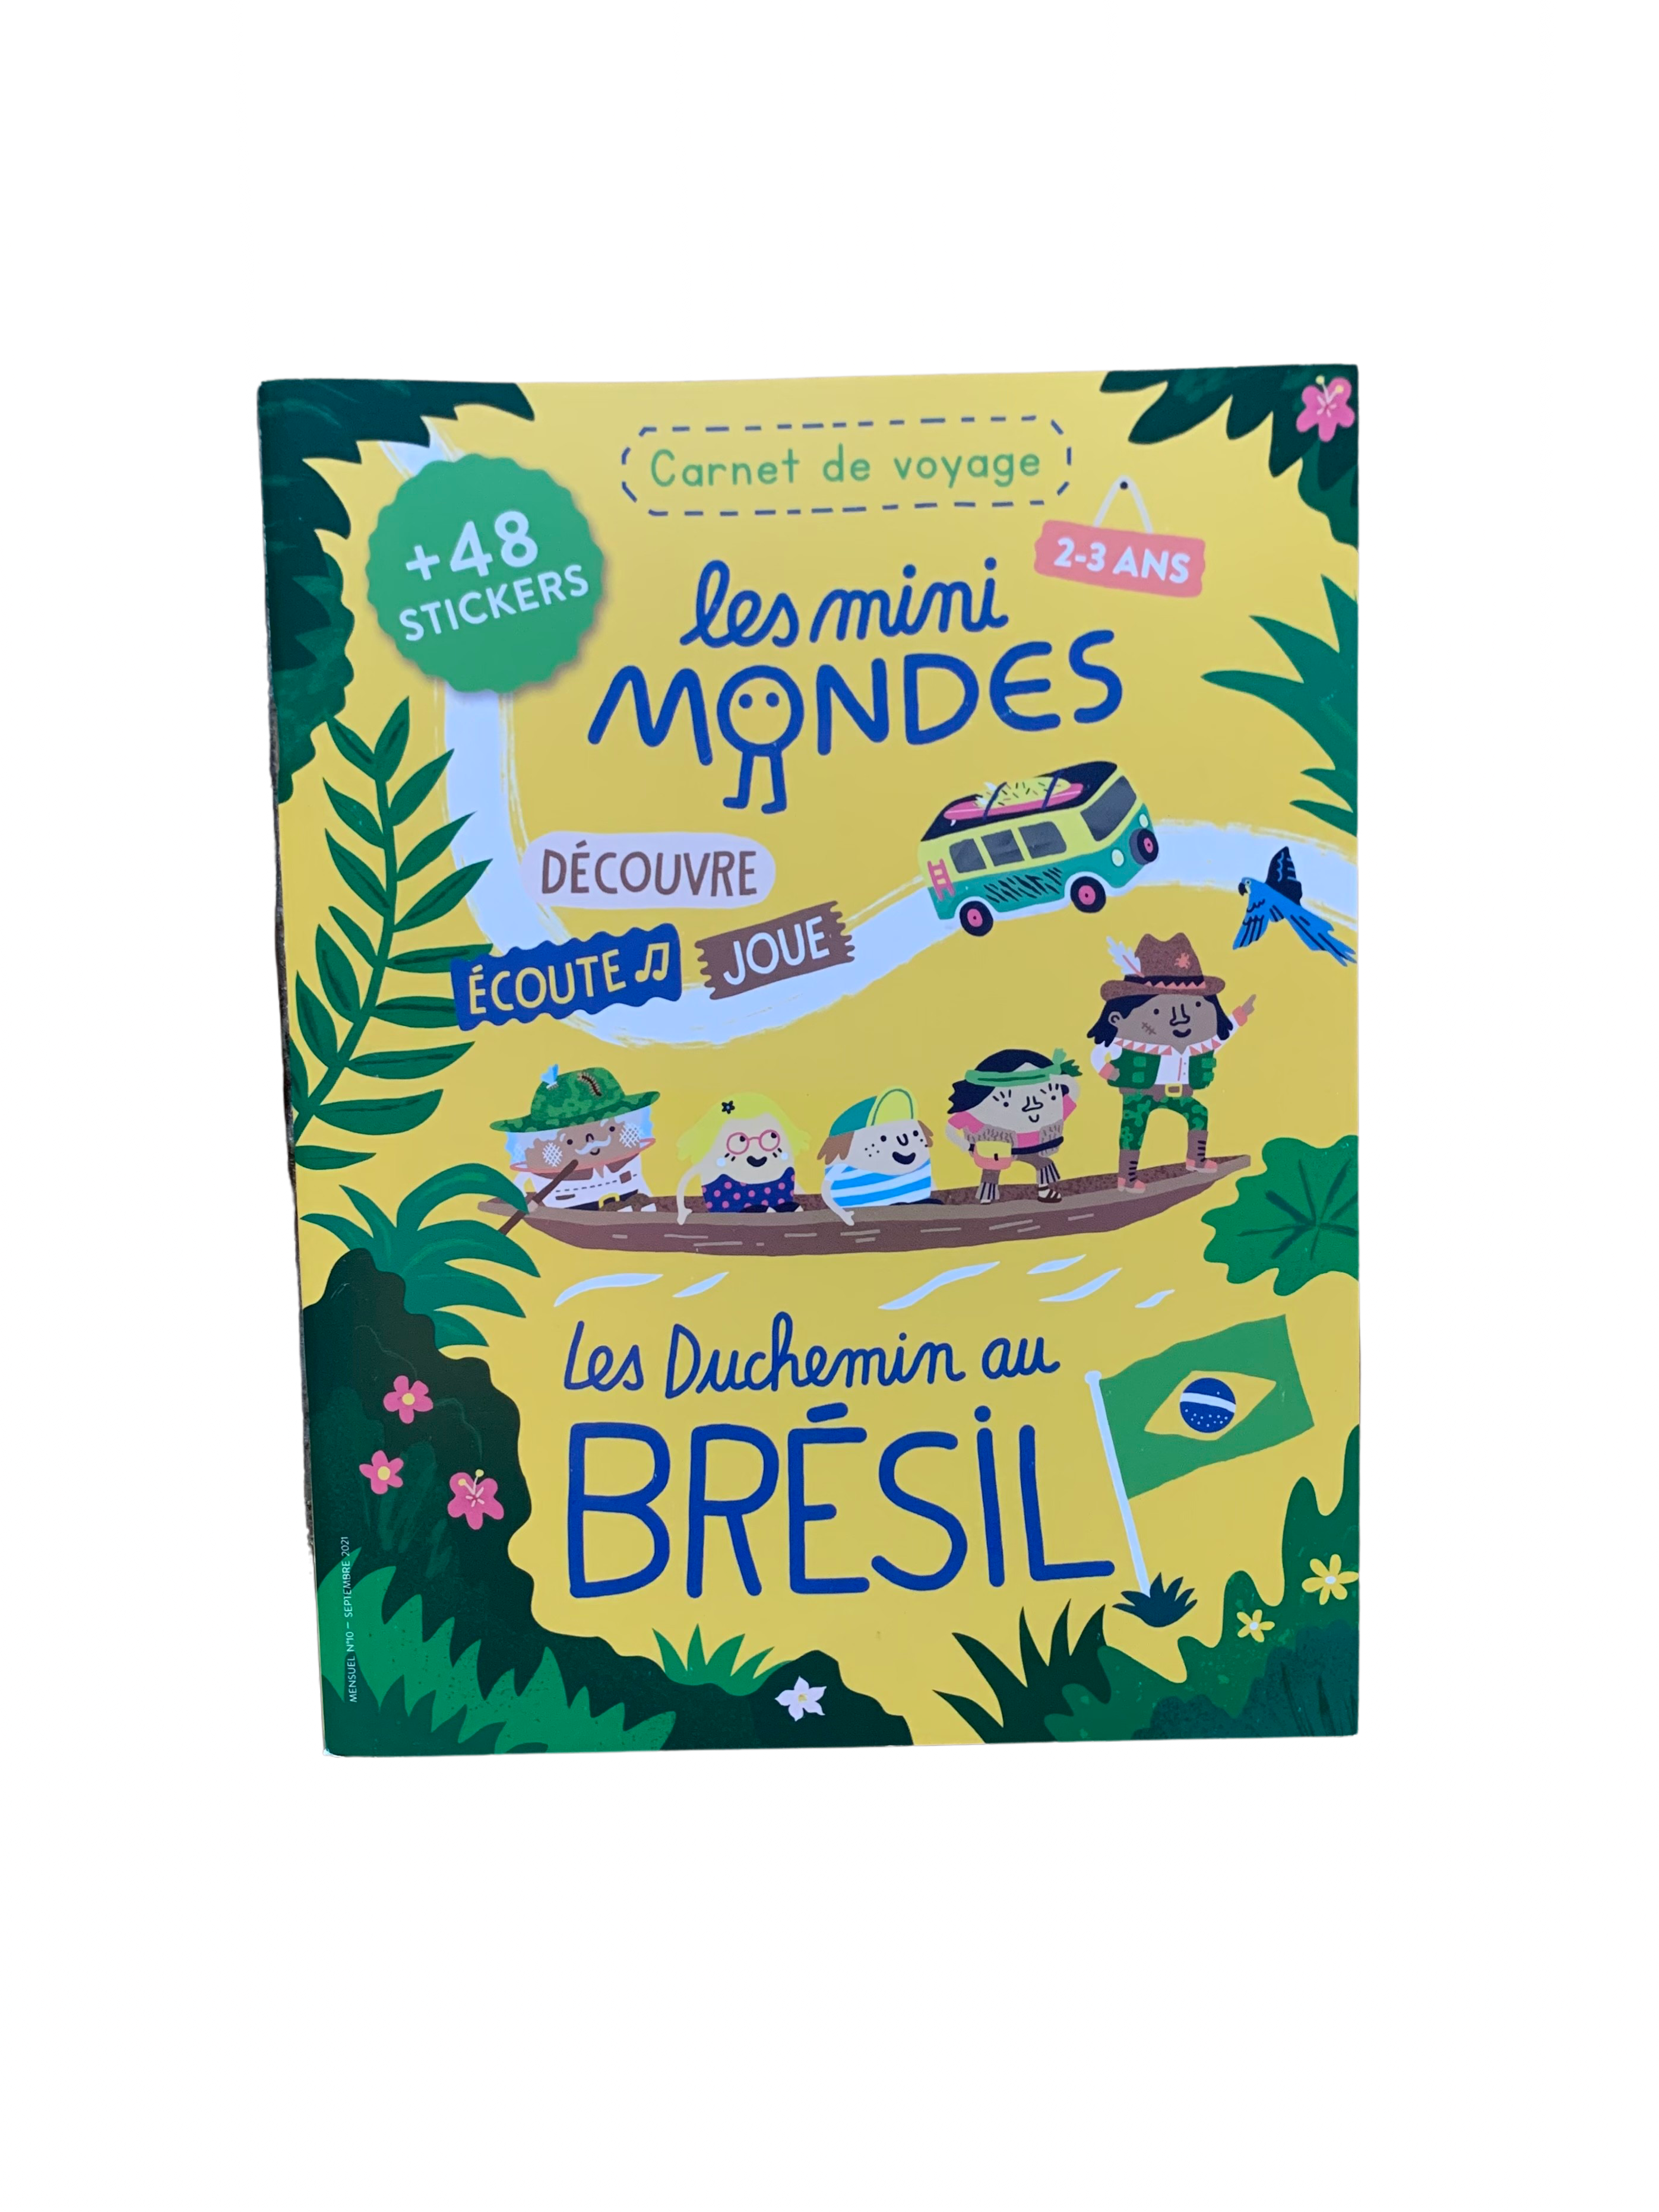 Le Carnet de voyage Brésil - 2-3 ans - Neuf – De Môme en Môme